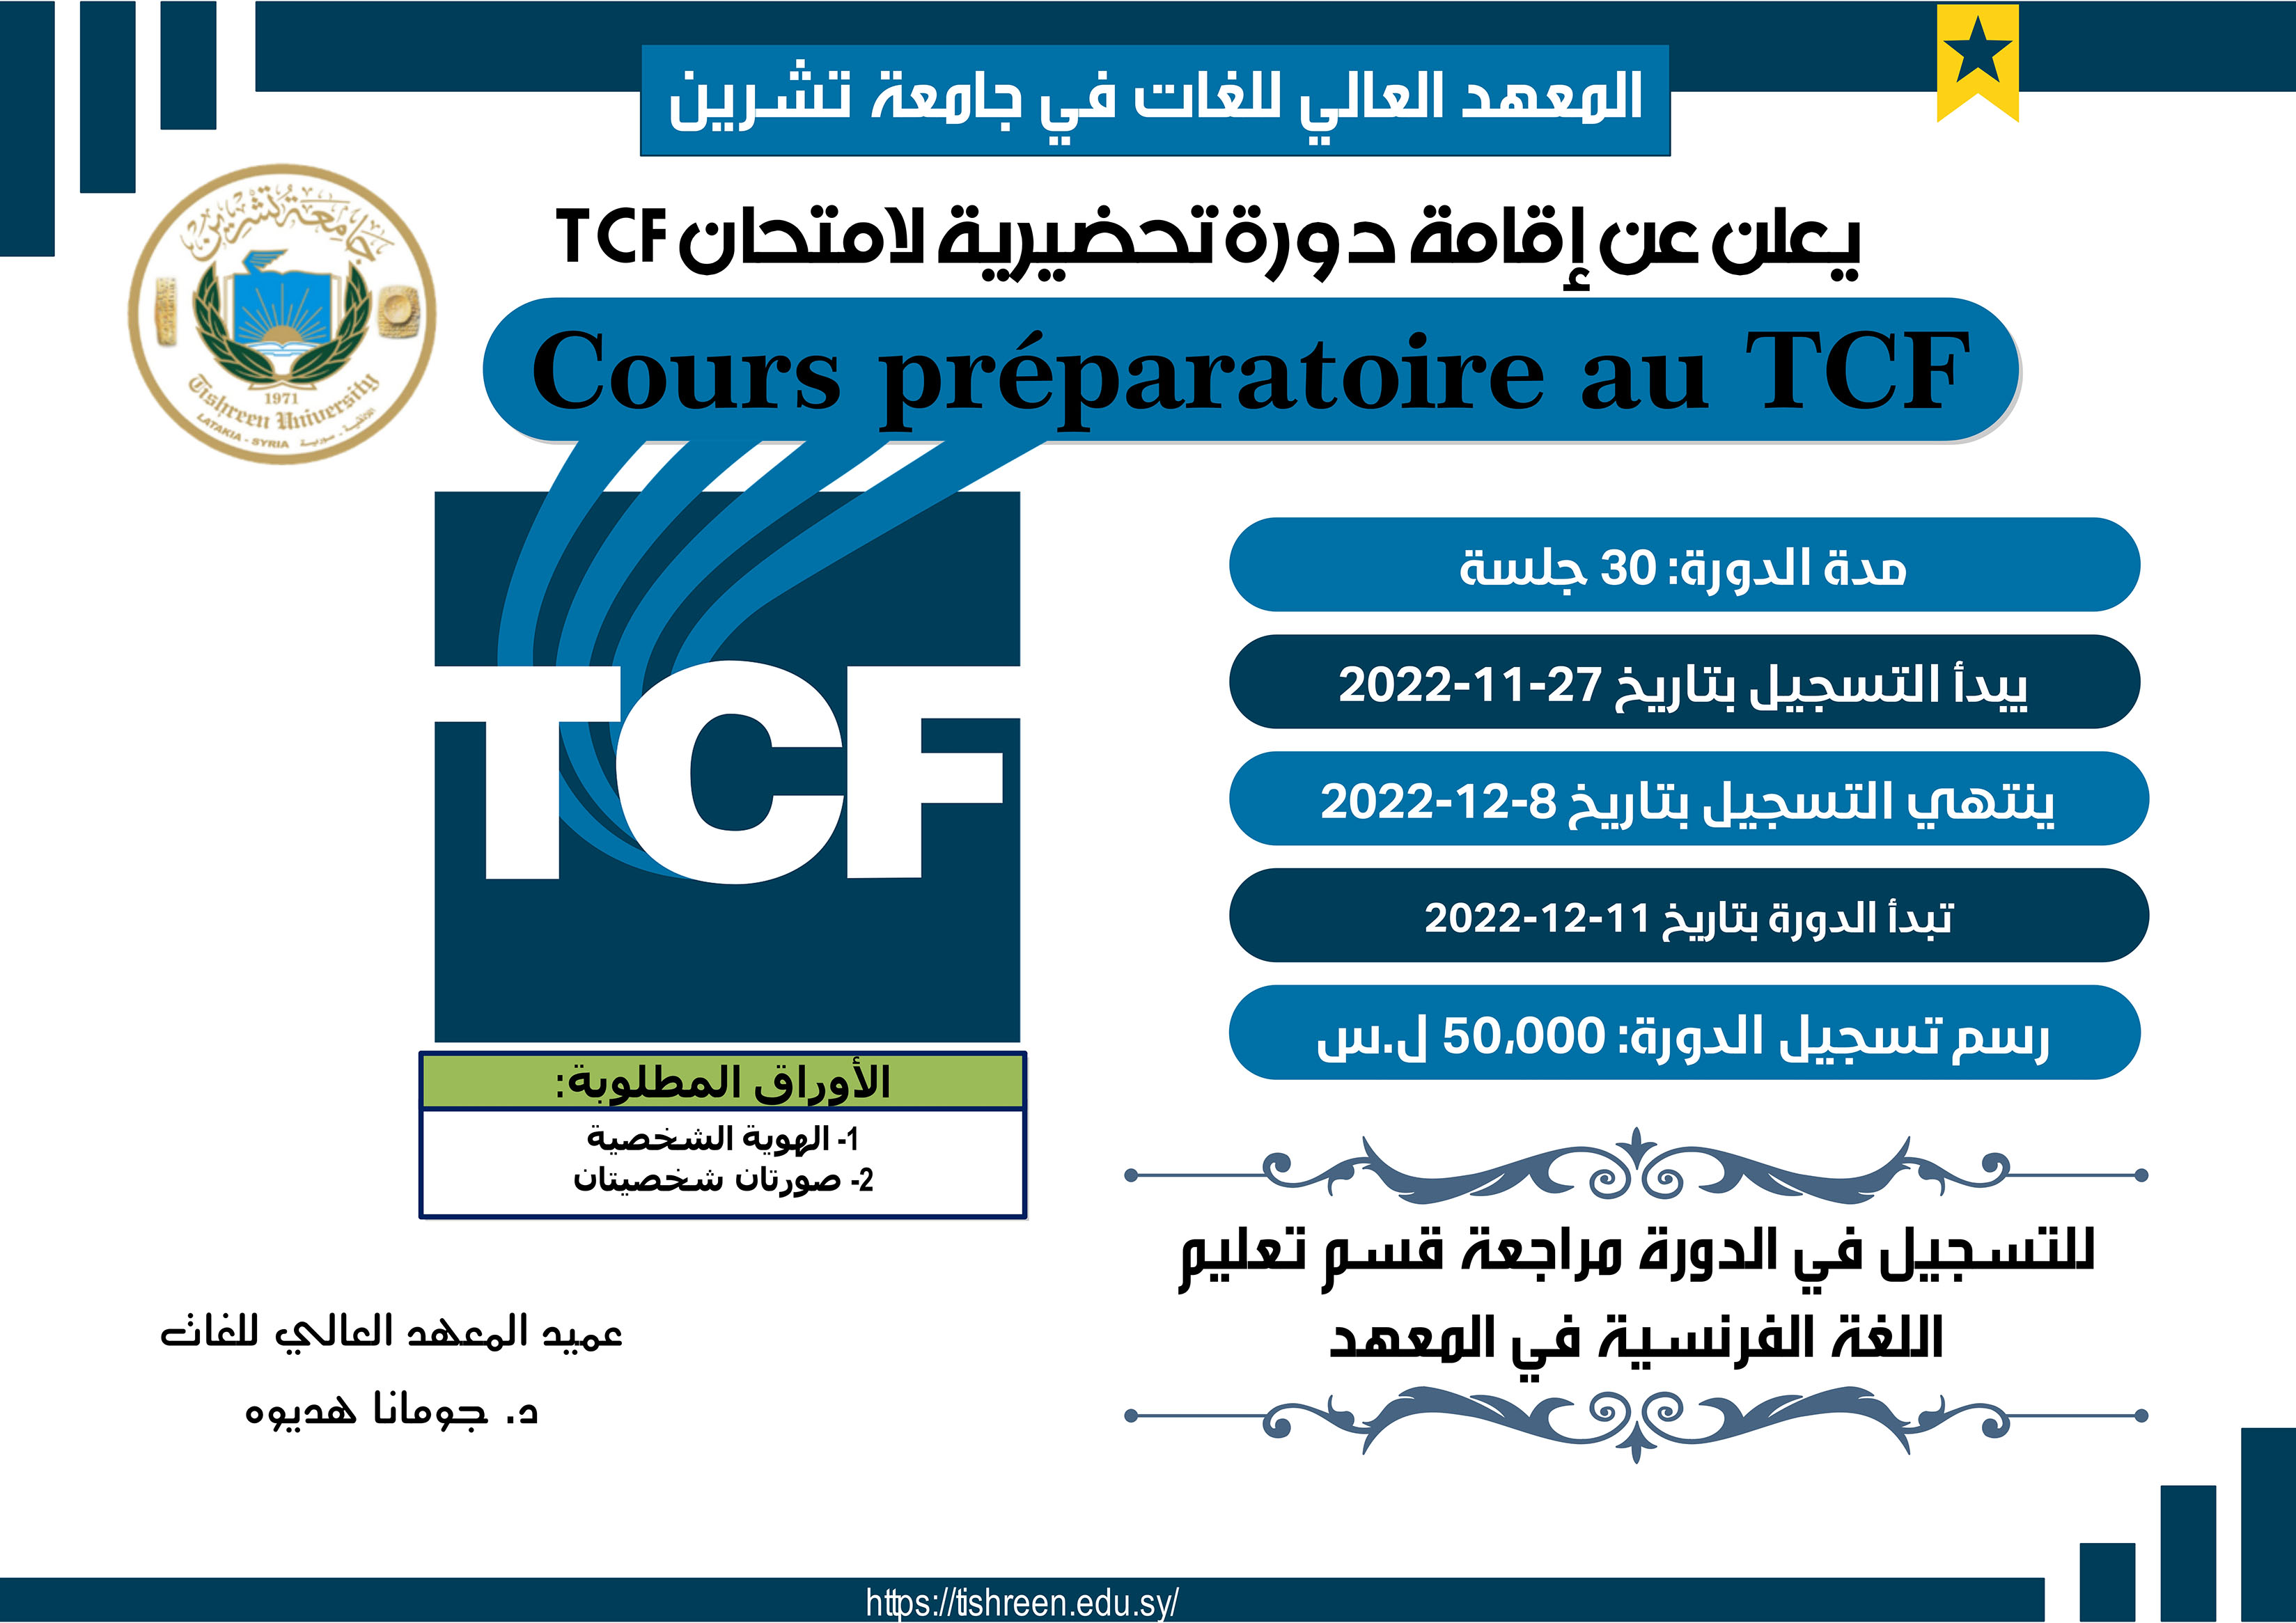 المعهد العالي للغات يعلن عن إقامة دورة تحضيرية لاختبار  TCF